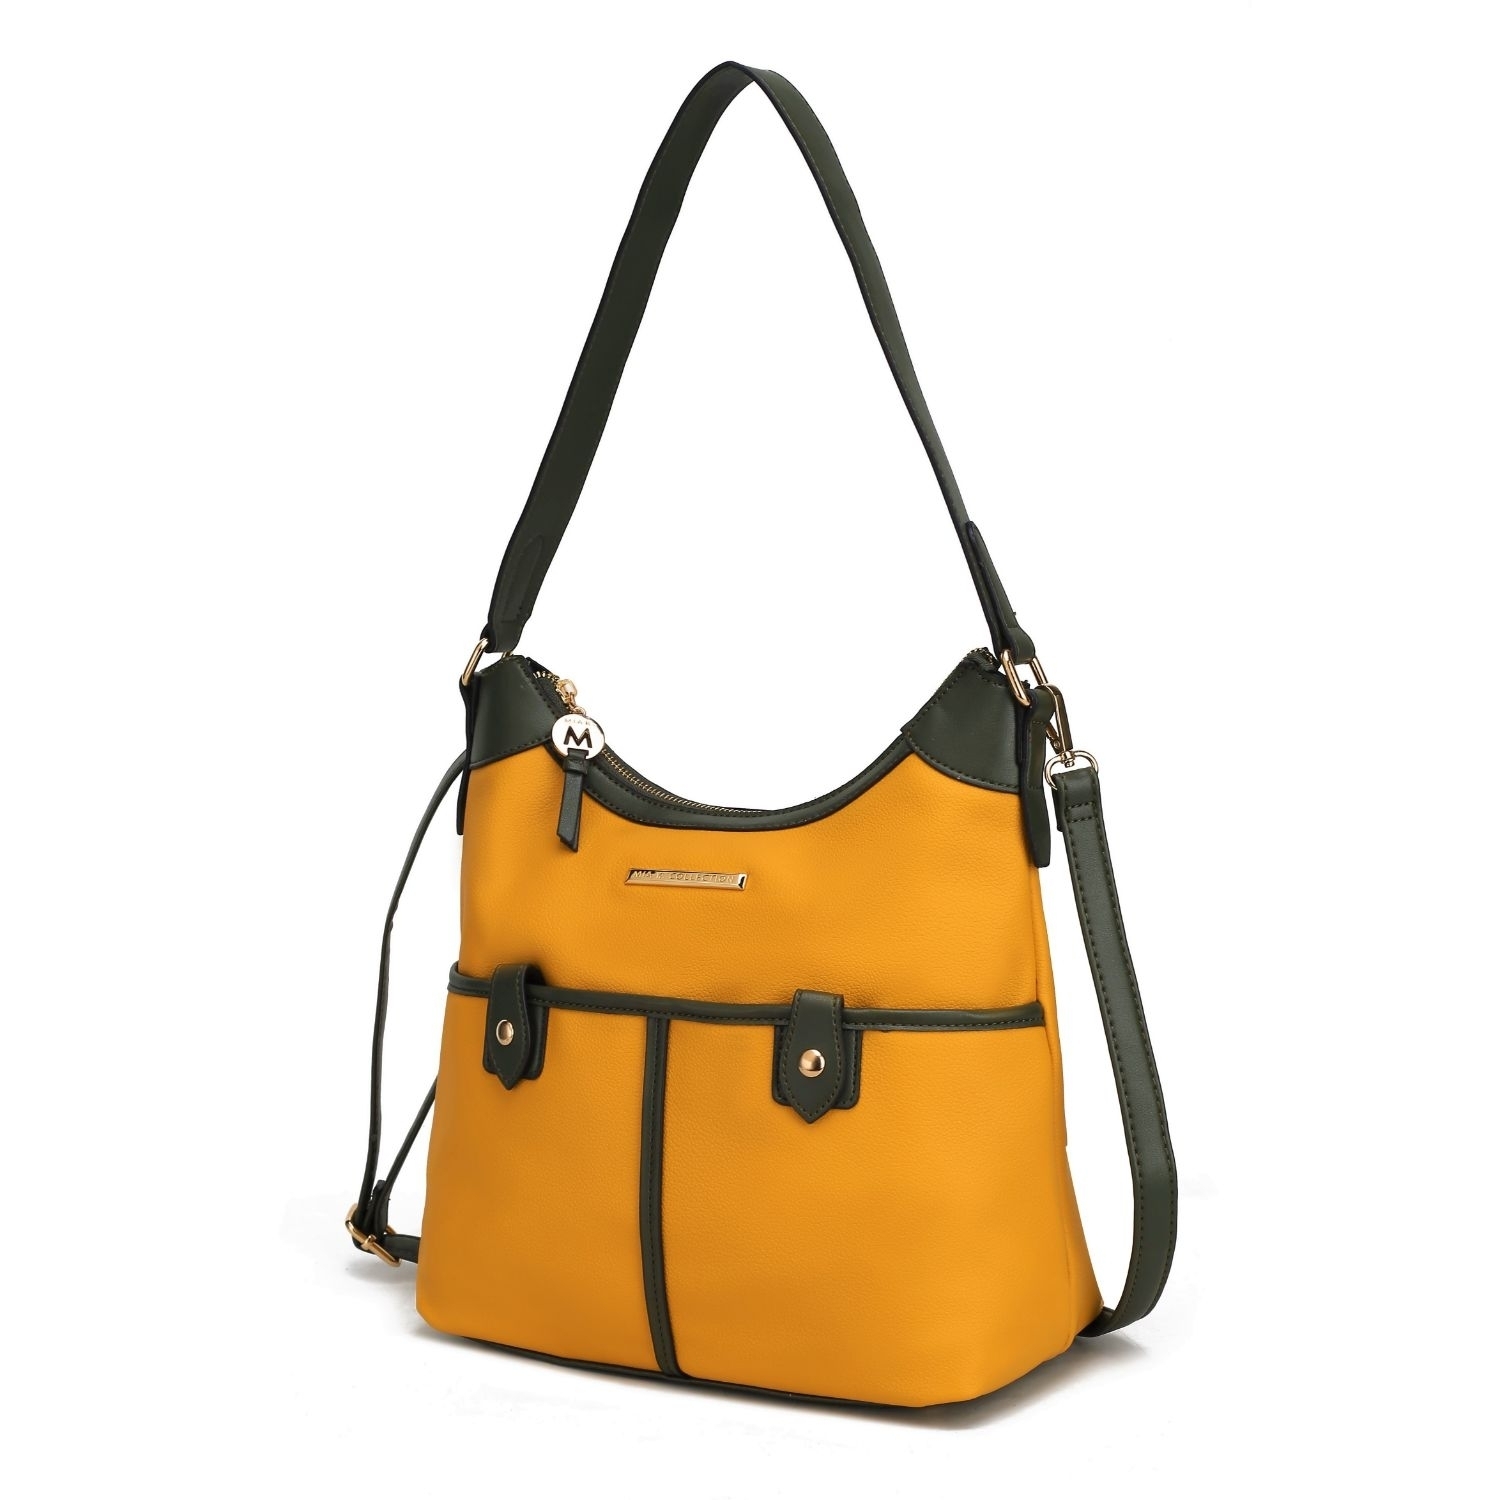 MKF Collection Harper Vegan Color Block Leather Womens Shoulder Handbag By Mia K - Mustard - Olive